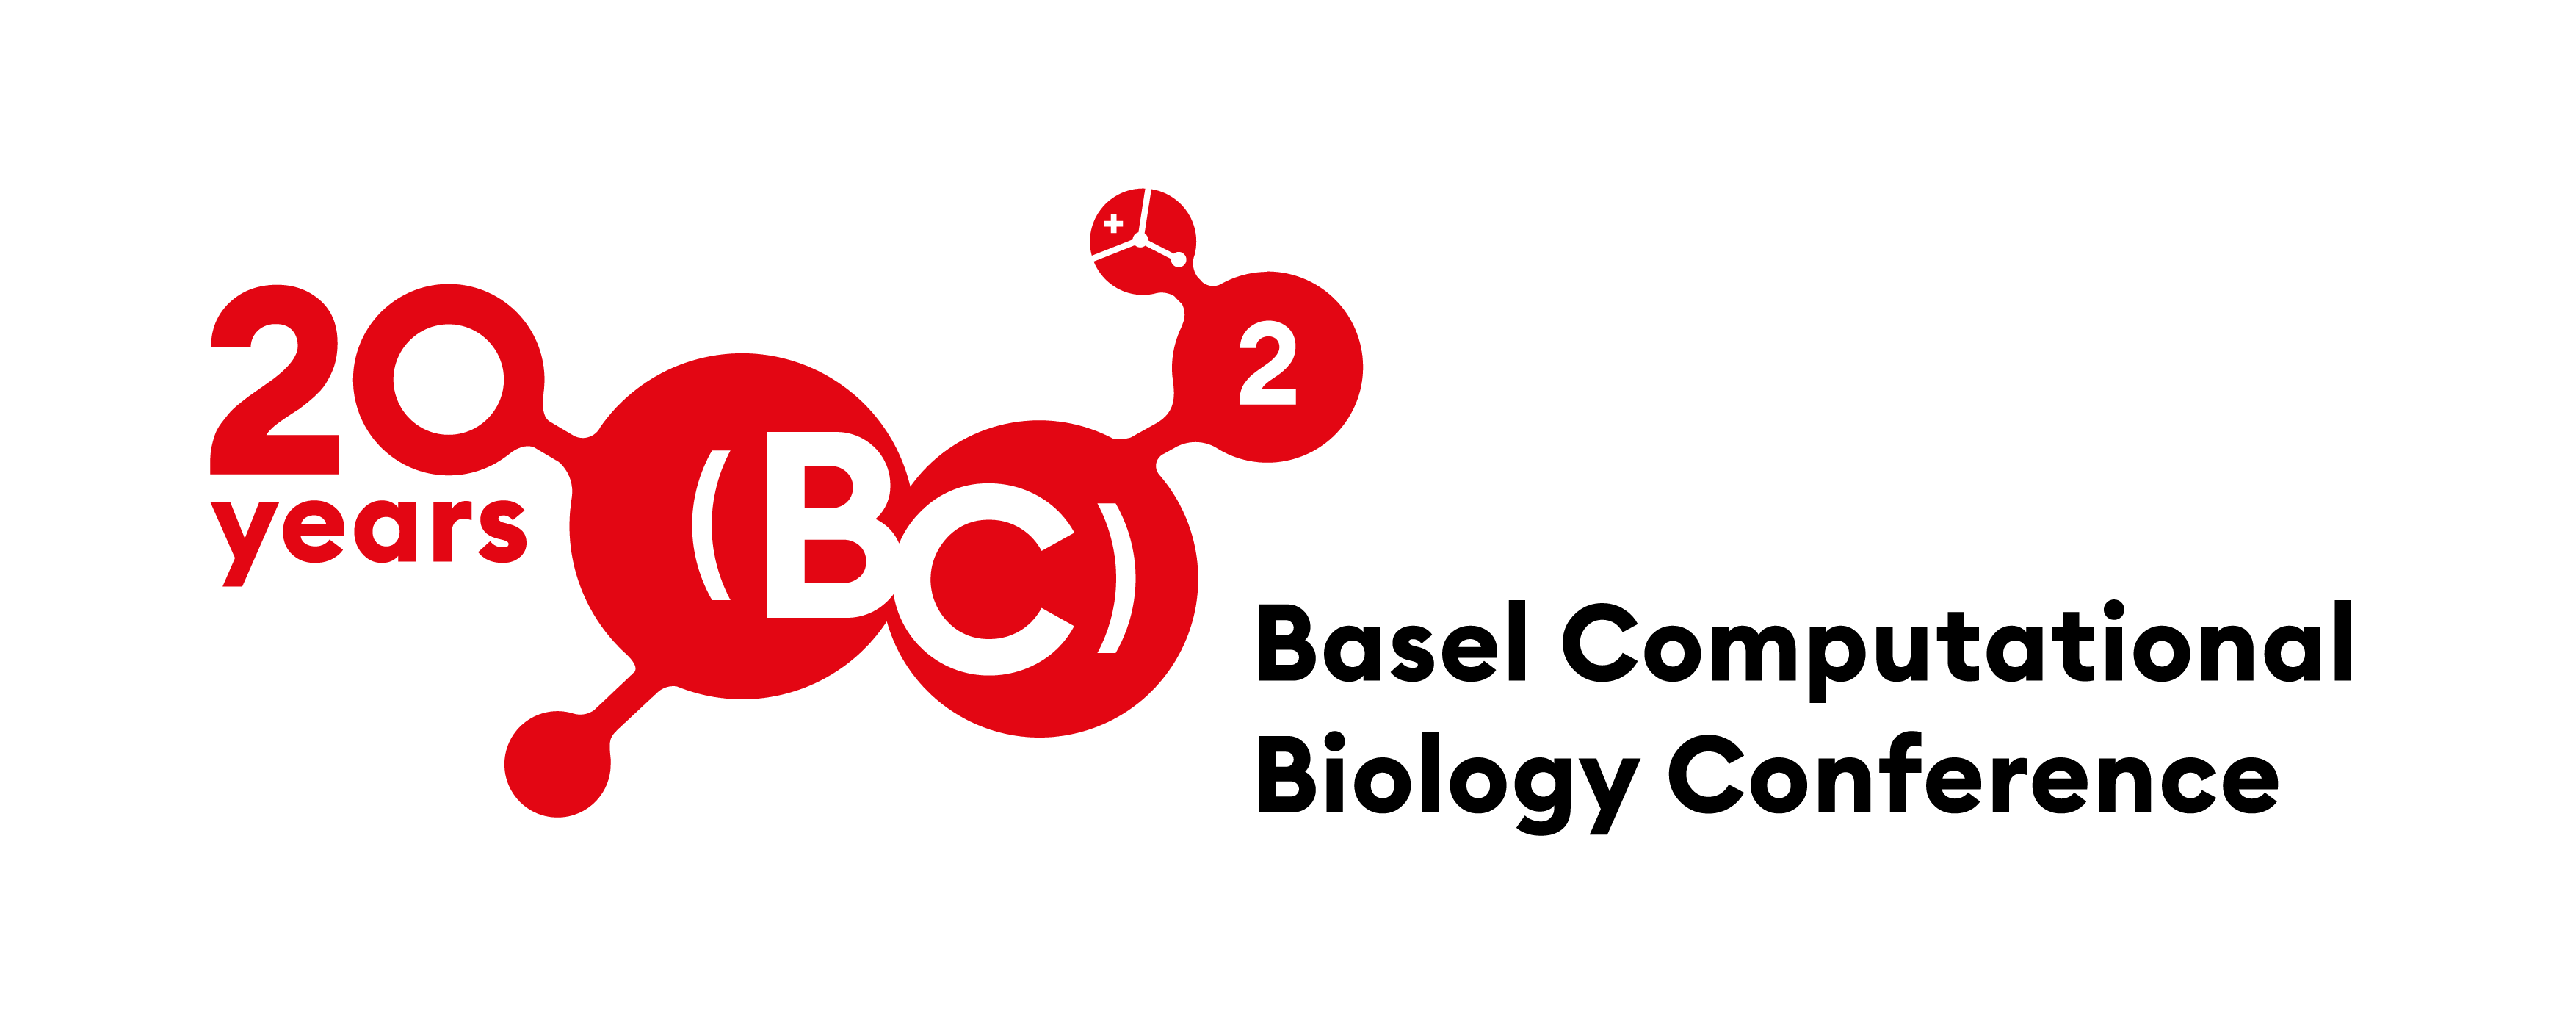 [BC]2 Basel Computational Biology Conference 2023 SPHN